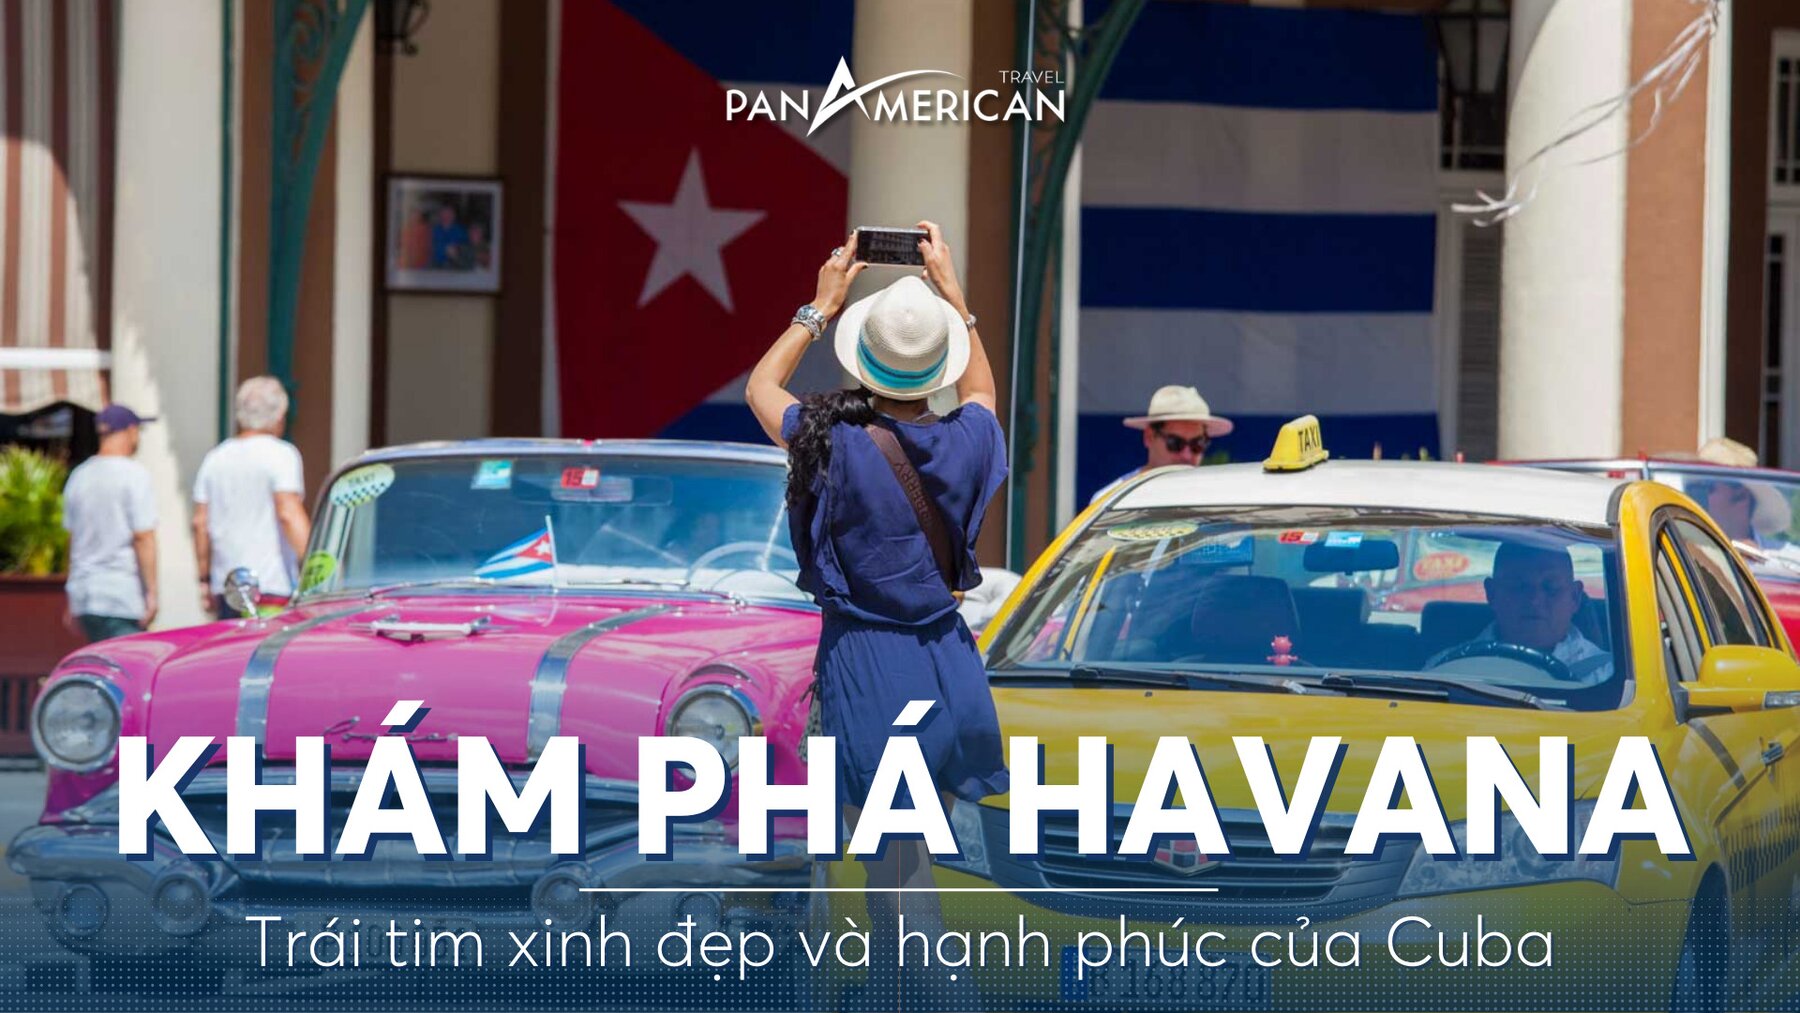 Havana - Trái tim xinh đẹp và hạnh phúc của Cuba